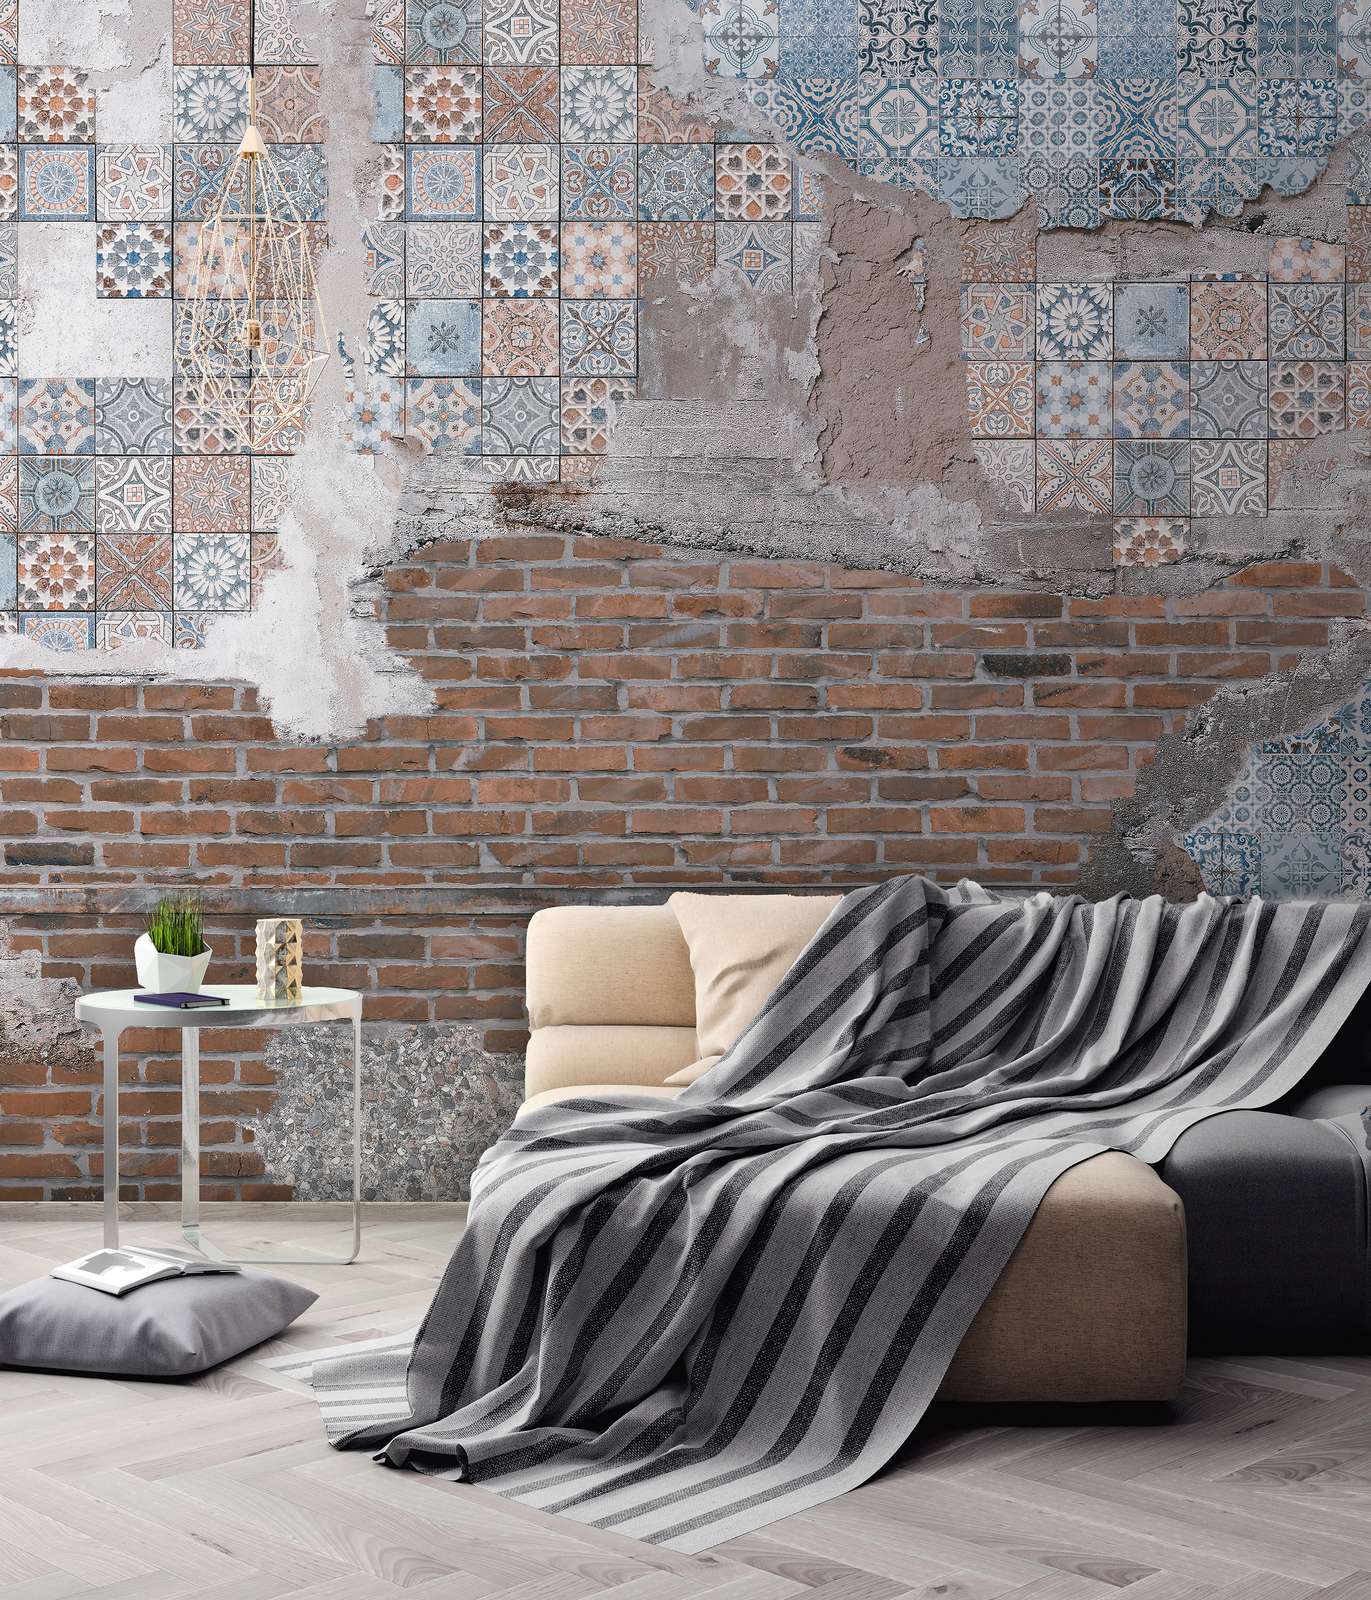             Papier peint panoramique Mur de briques avec mosaïques enduites - marron, bleu, gris
        